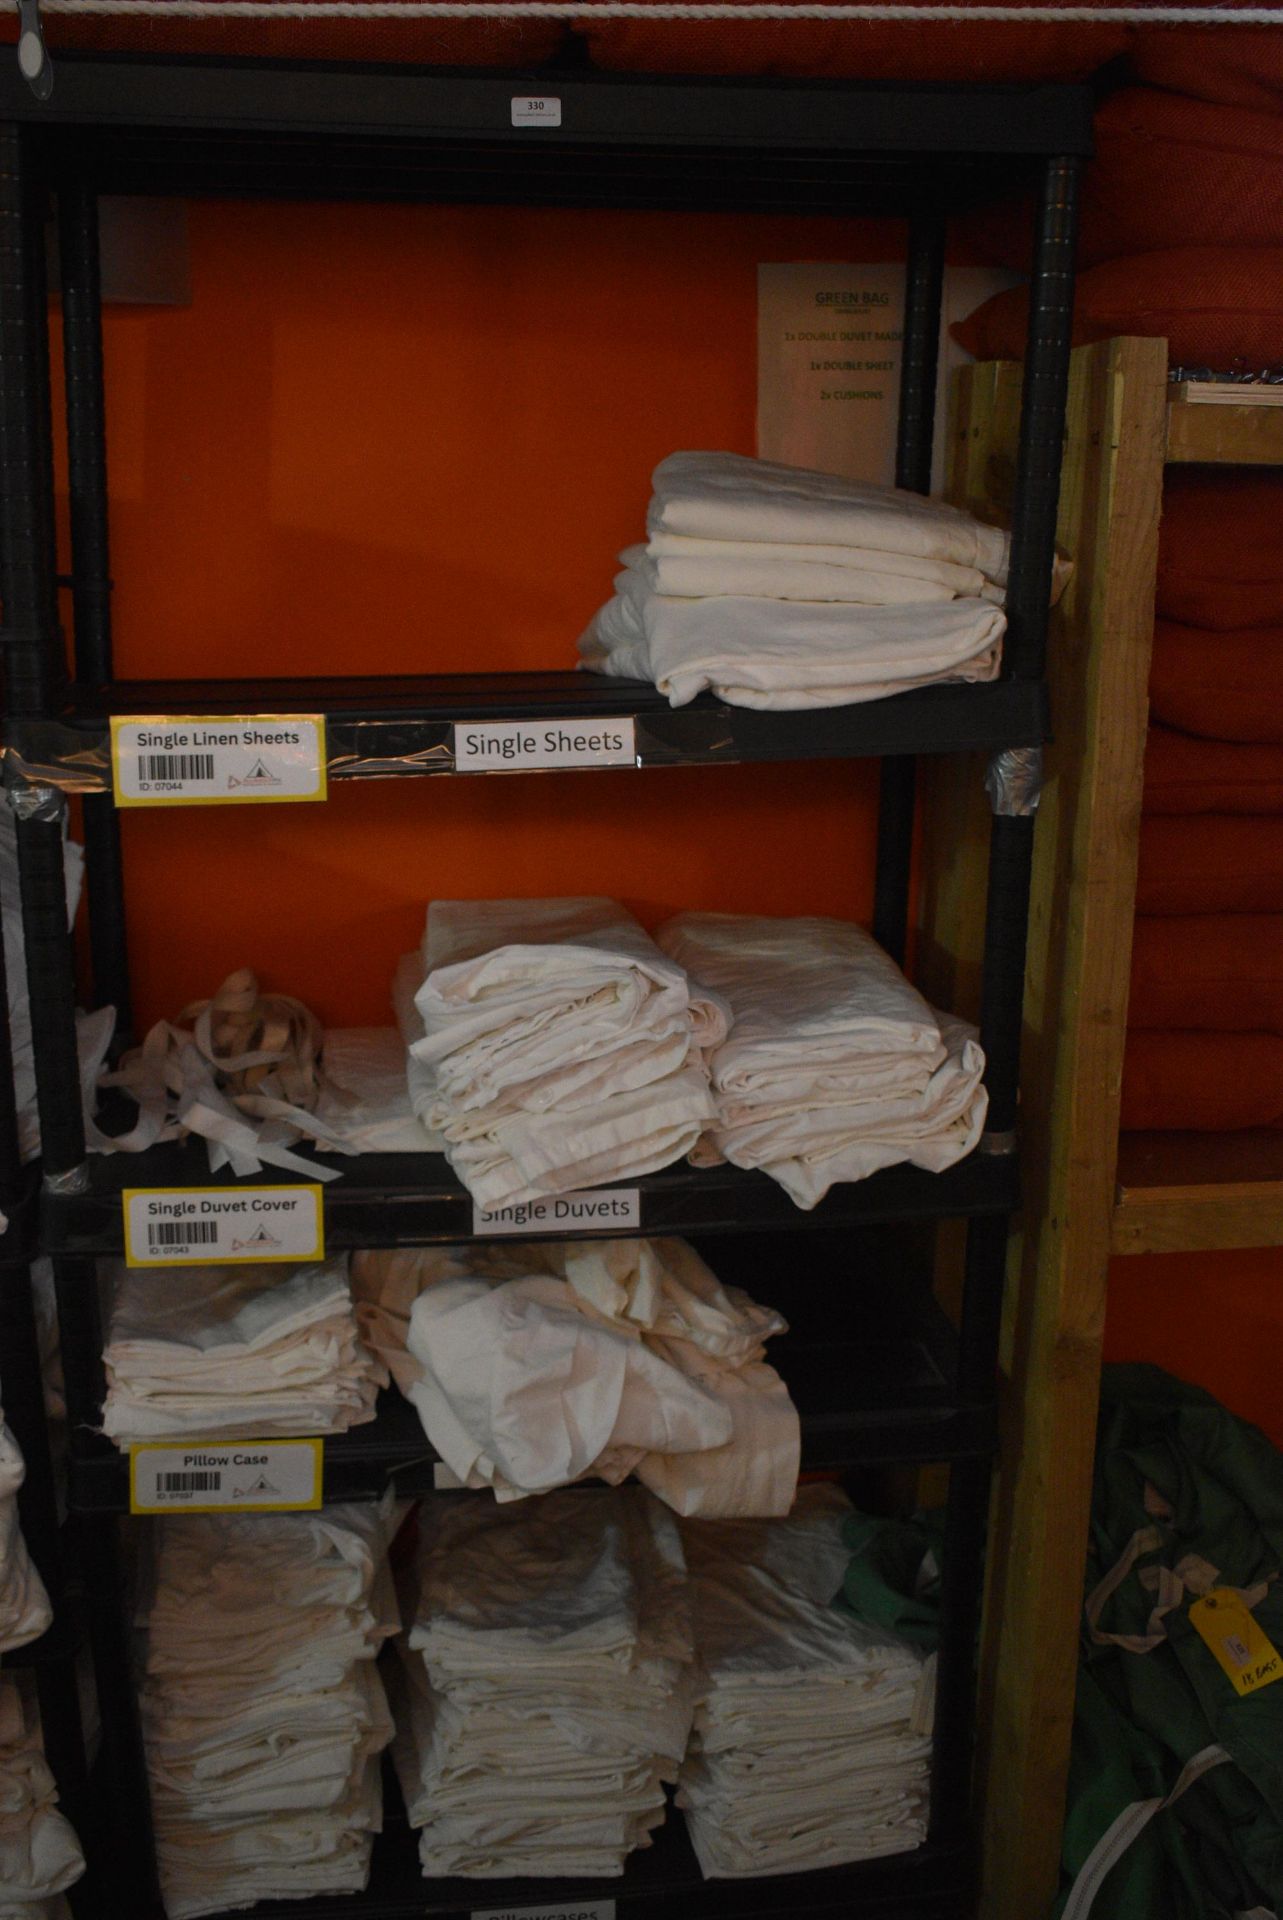 *Five Tier Plastic Shelf Unit Containing Single Duvets, Single Linen Sheets, Pillowcases, etc.